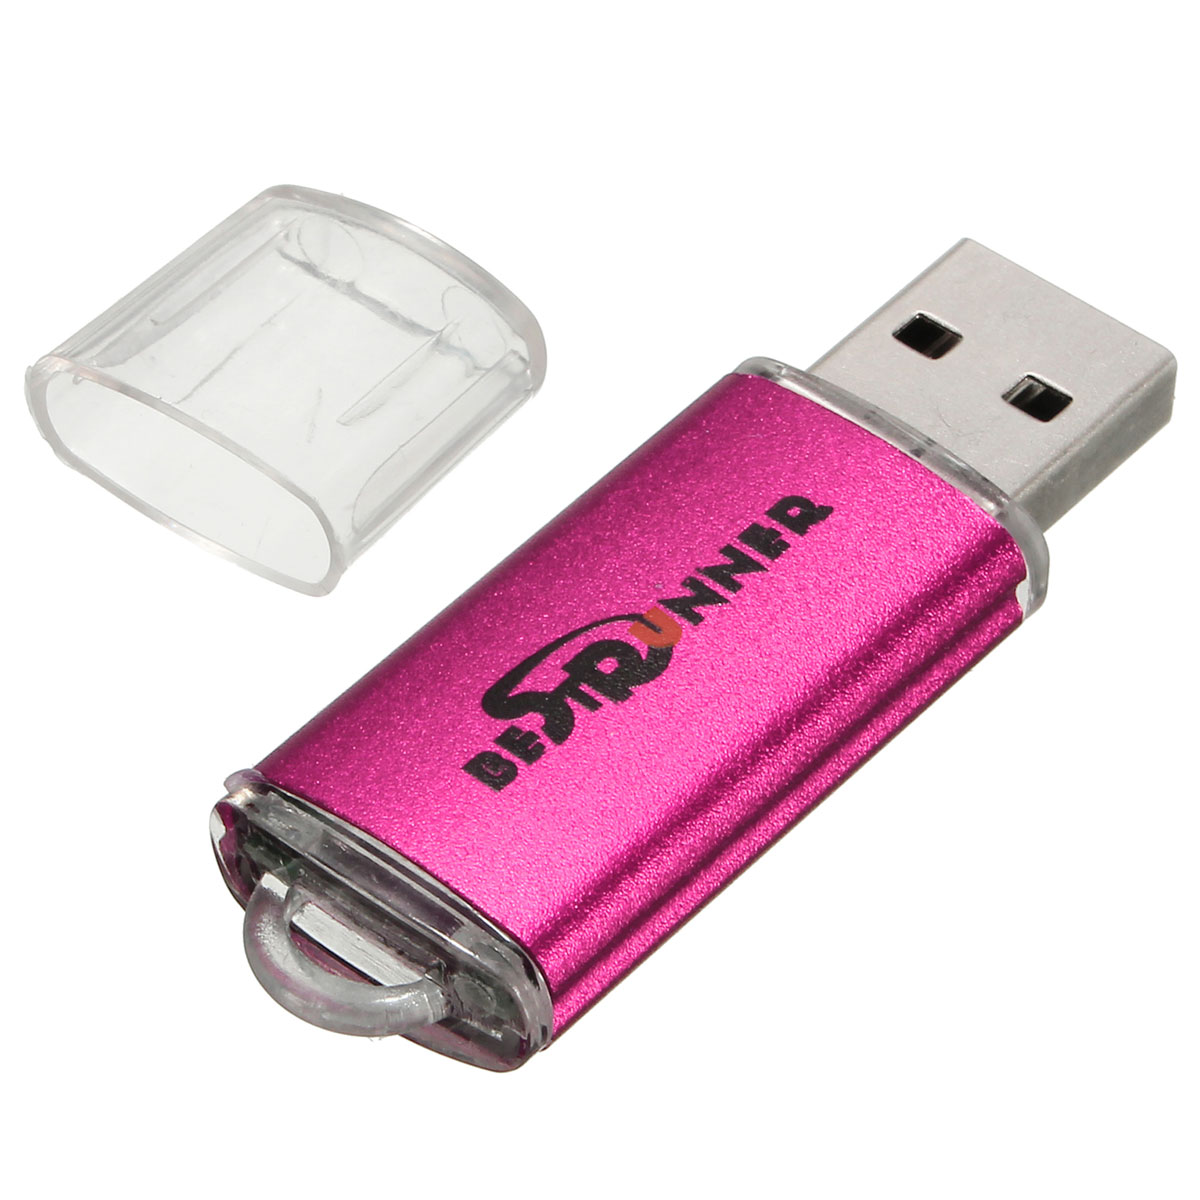 Bestrunner 32GB USB 2.0 Flash Drive Candy Color Memory U Disk 24